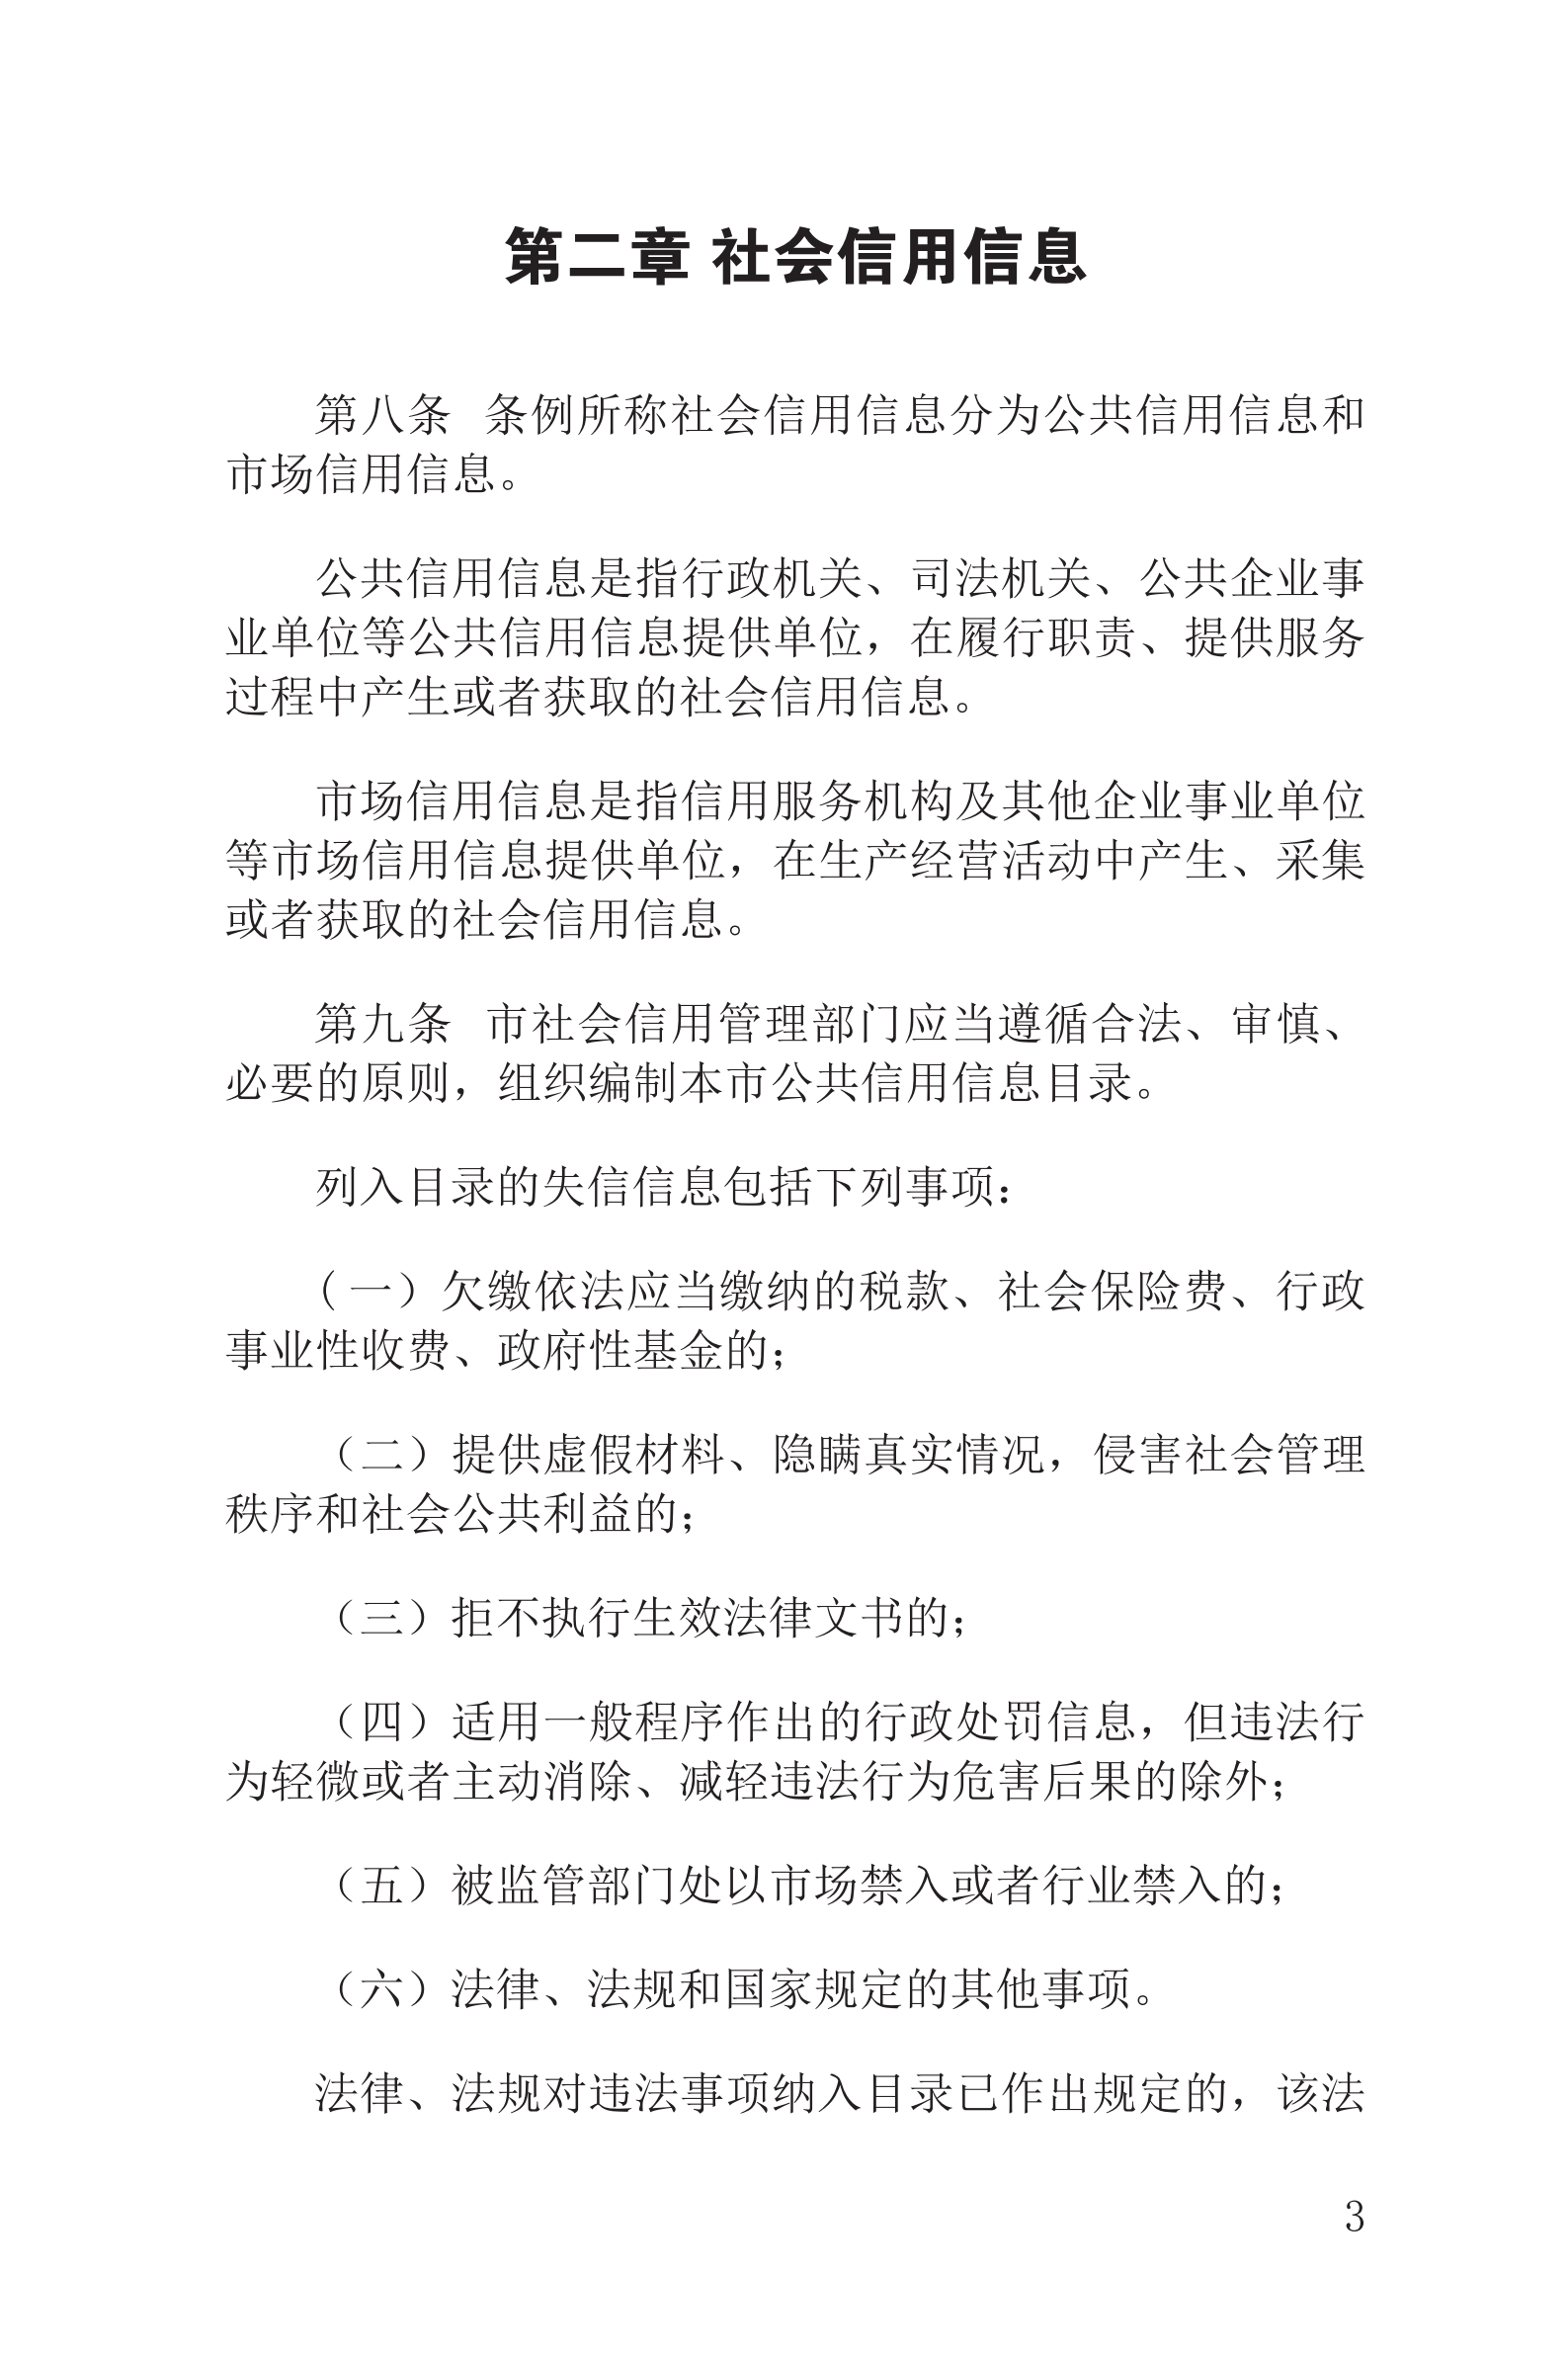 上海市社会信用条例_04.png